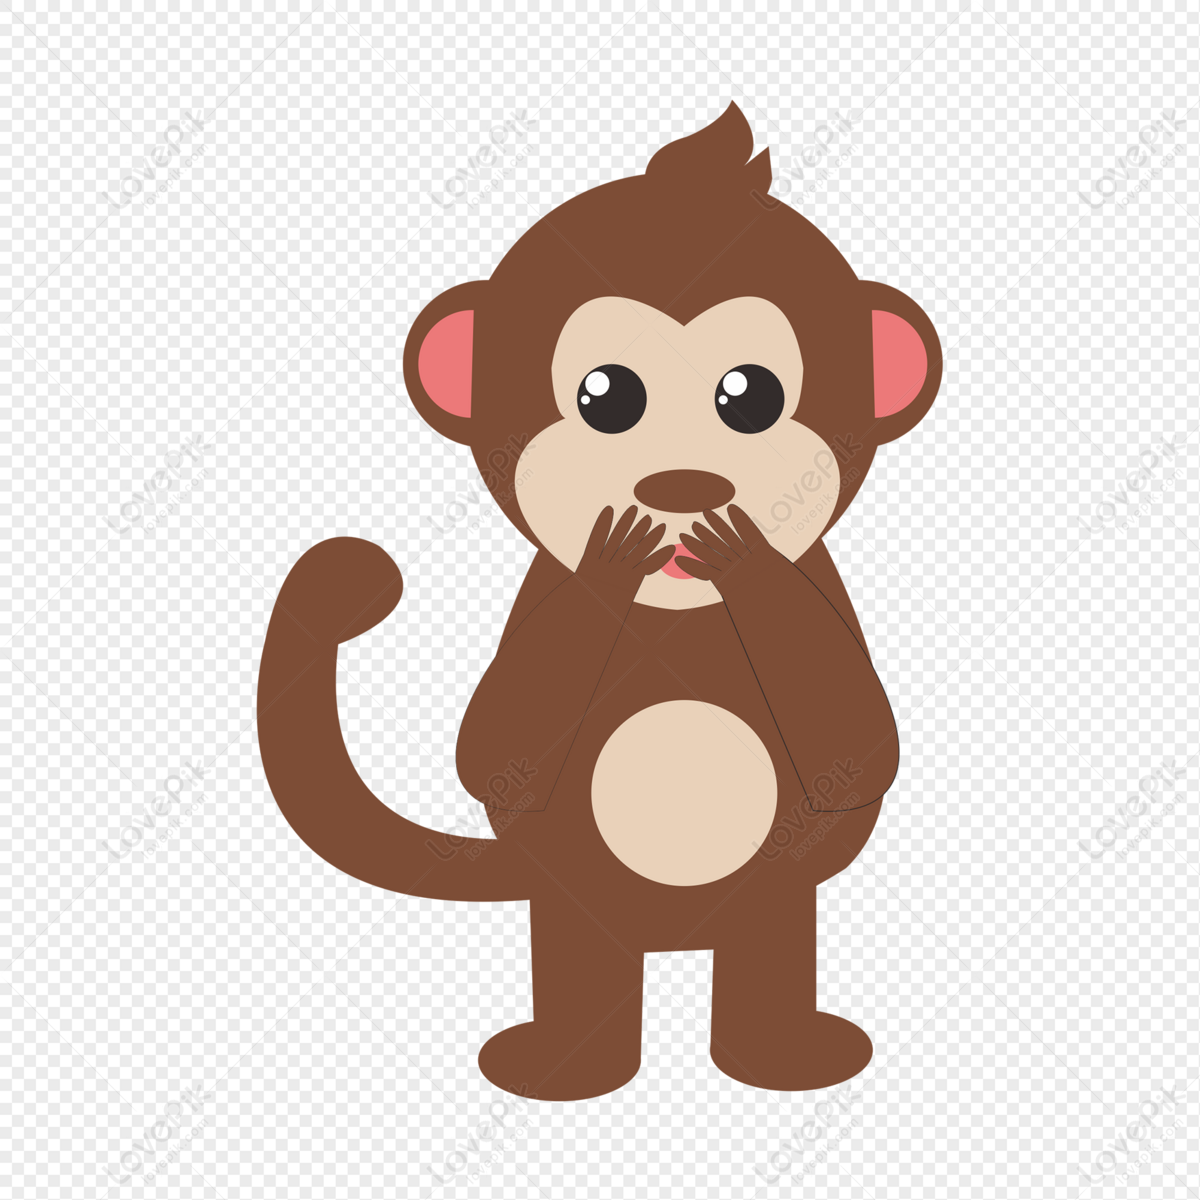 Khỉ nhỏ sáng tạo - Bạn có từng nghe về những chú khỉ nhỏ sáng tạo? Hãy cùng chúng tôi tìm hiểu về những đổi mới và sáng tạo của chúng qua những hình ảnh đáng yêu.